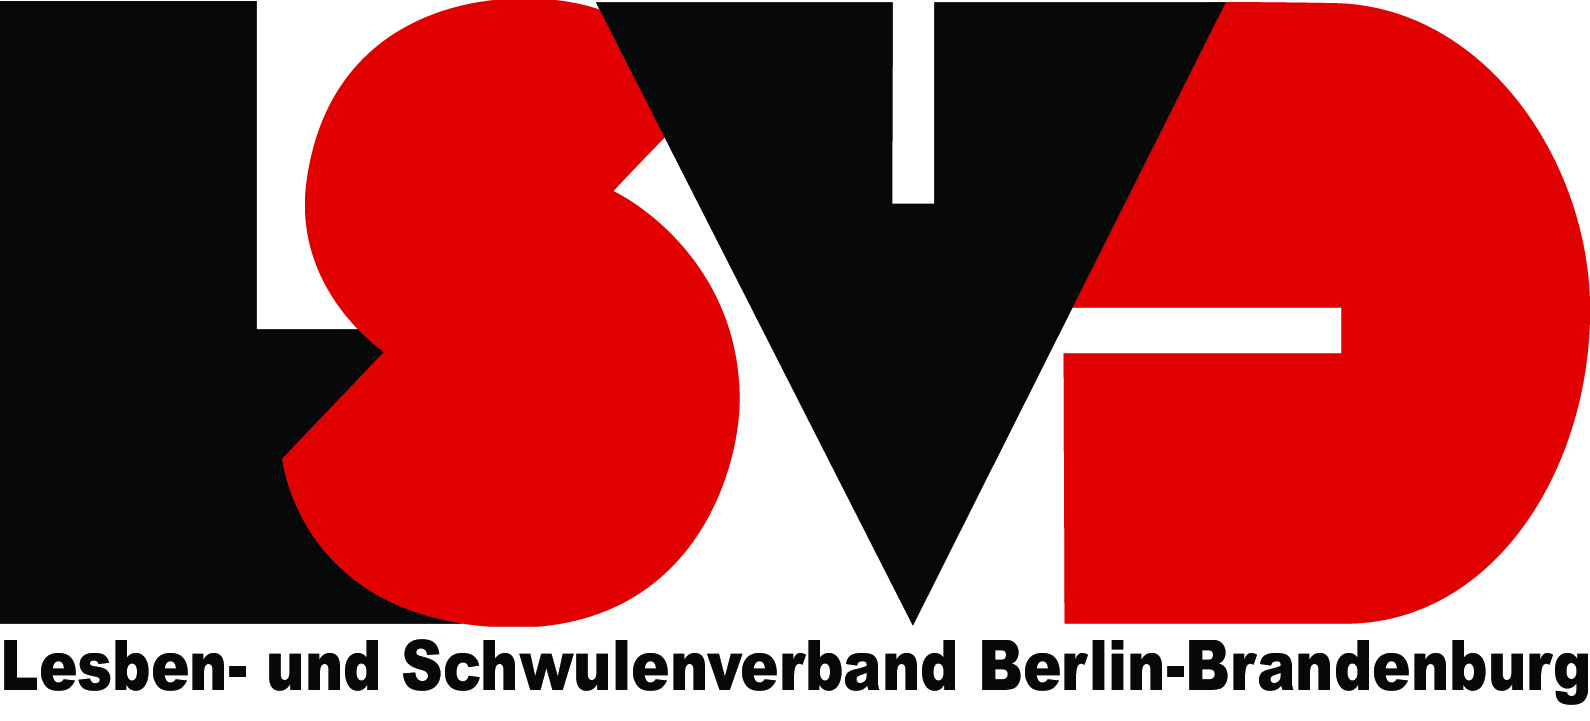 LSVD Berlin-Brandenburg e.V.